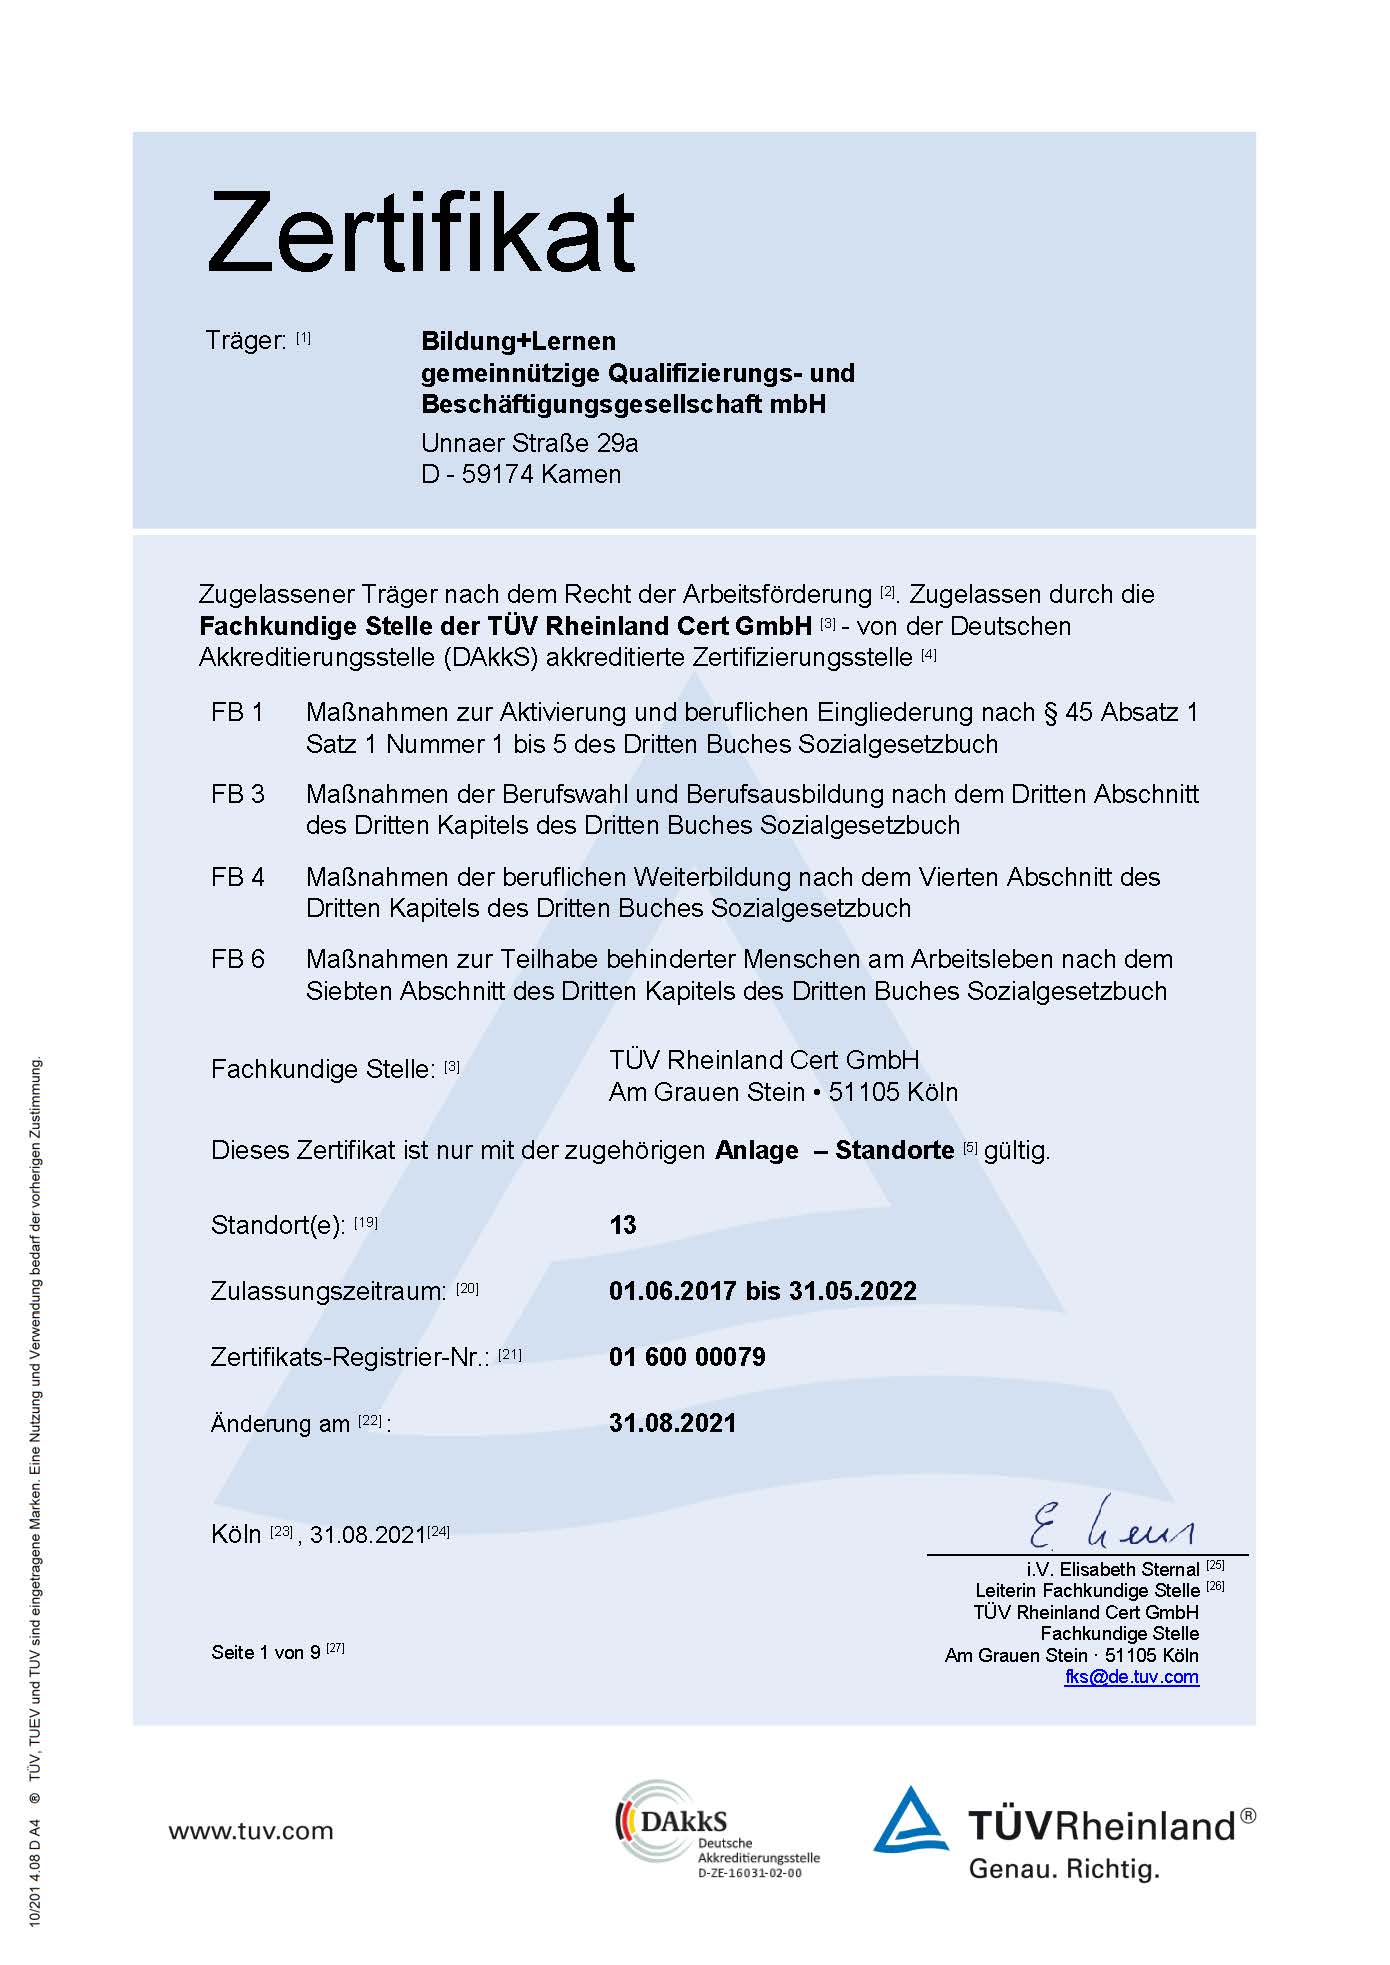 Zertifikat AZAV inkl. Anlagen 31.08.2021 Seite 1